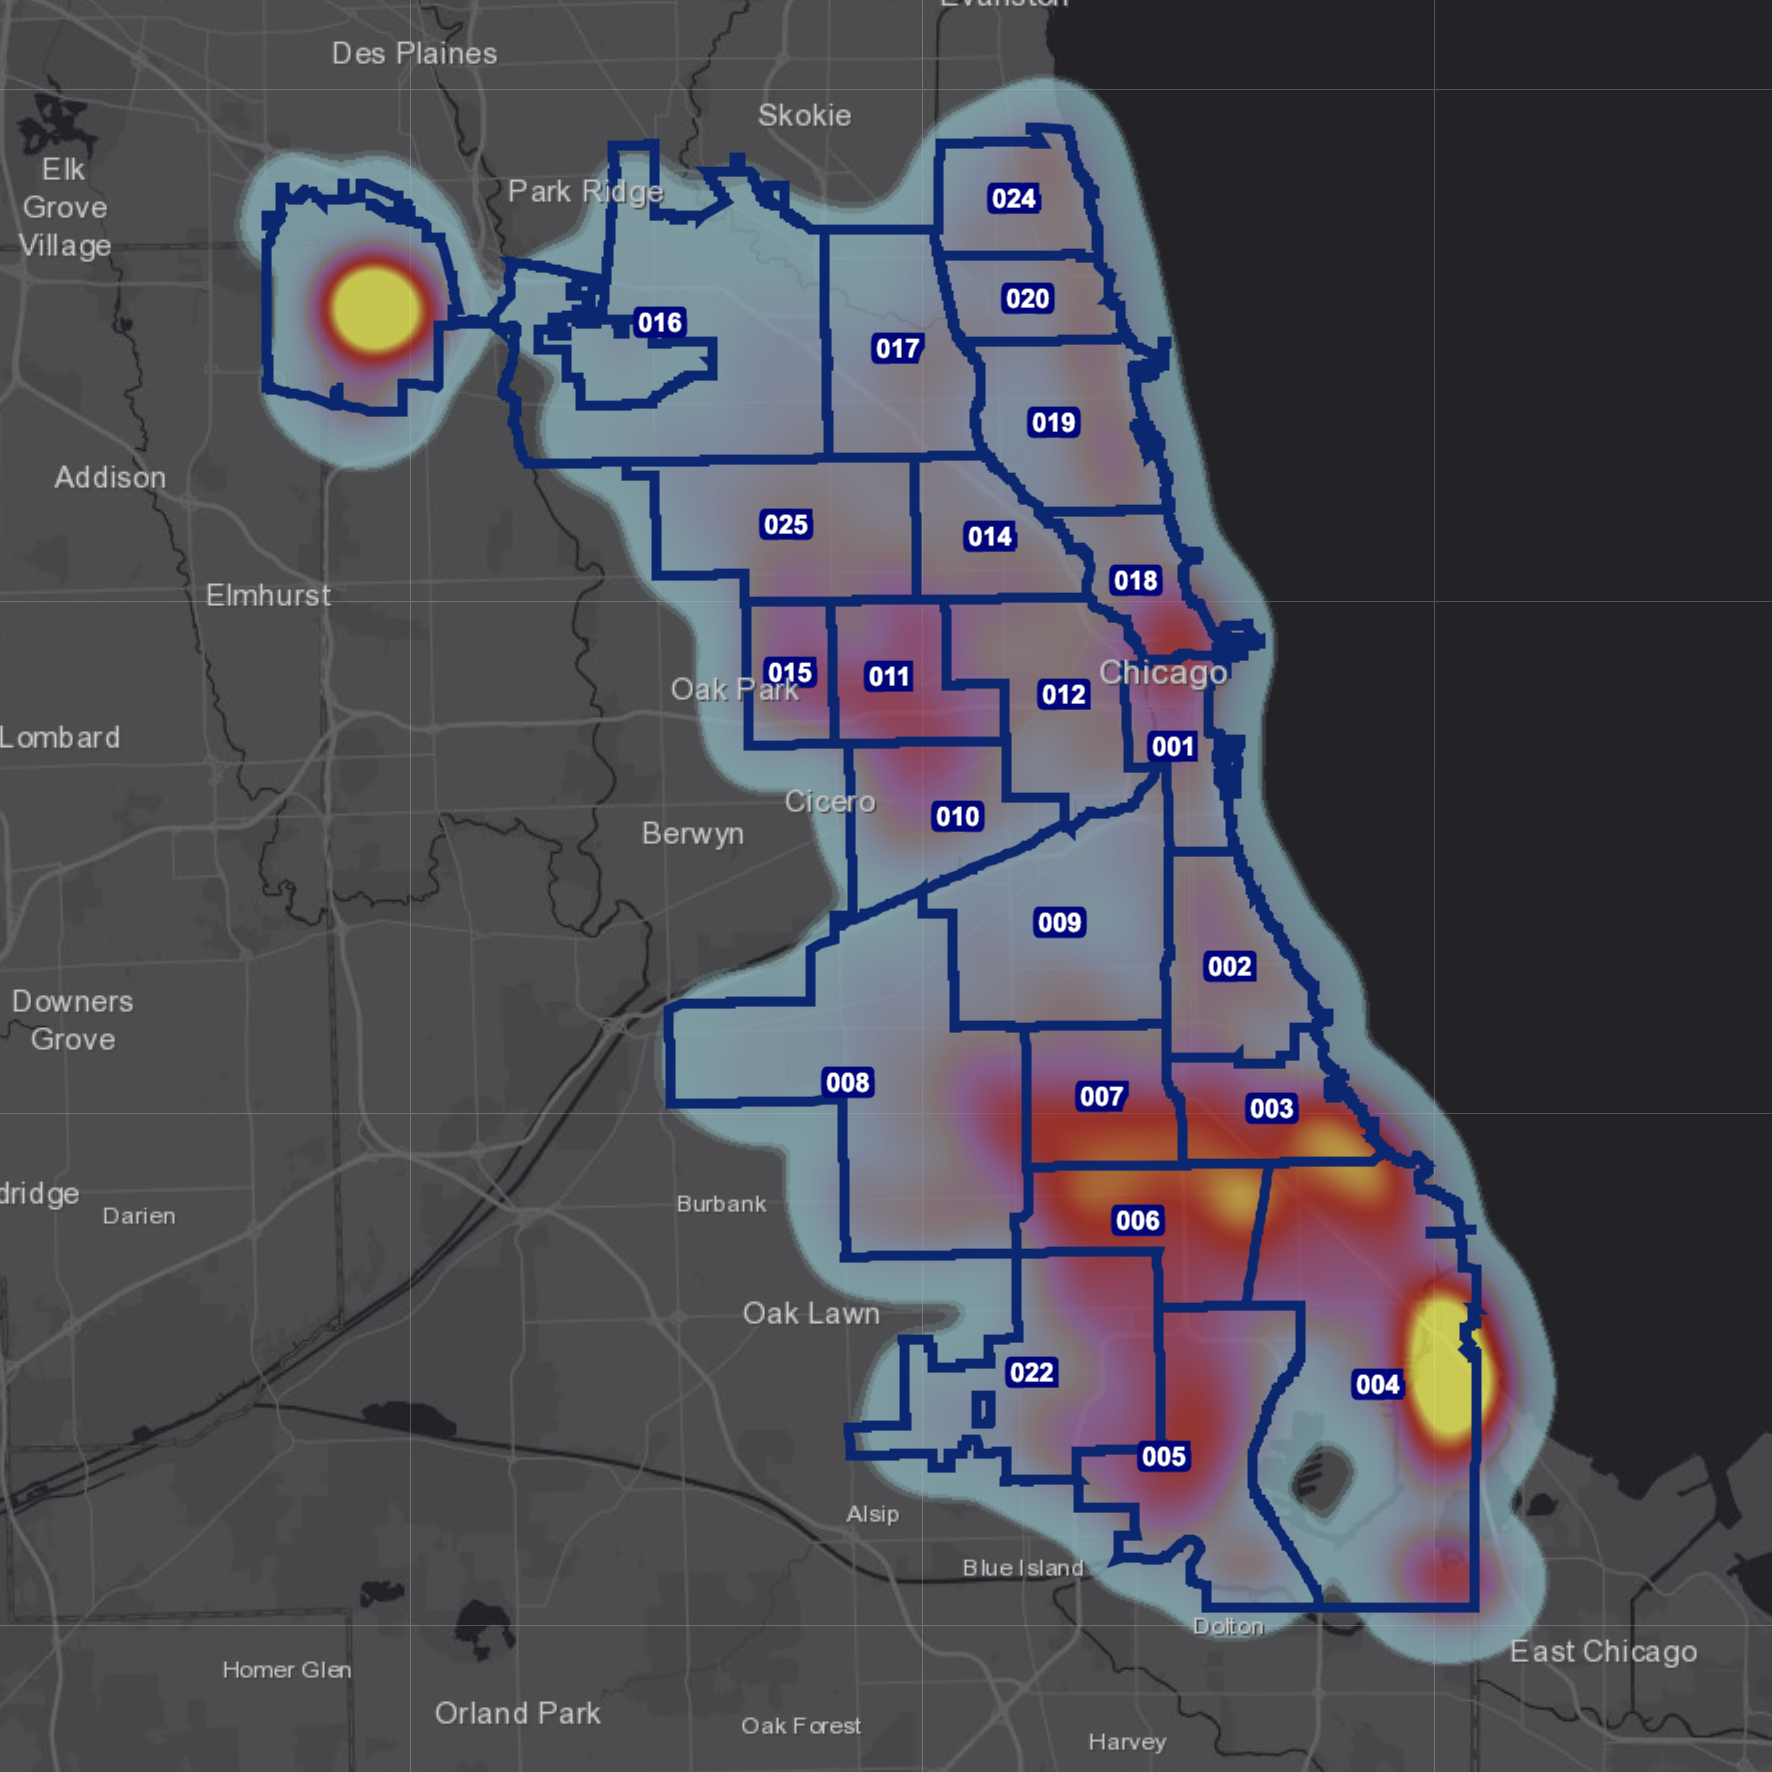 Это карта Чикаго с очагами преступности. Я не смогла хорошо разобраться с картой, но, как понимаю, чем краснее зона, тем больше преступлений в районе совершено. Источник: chicagopd.maps.arcgis.com